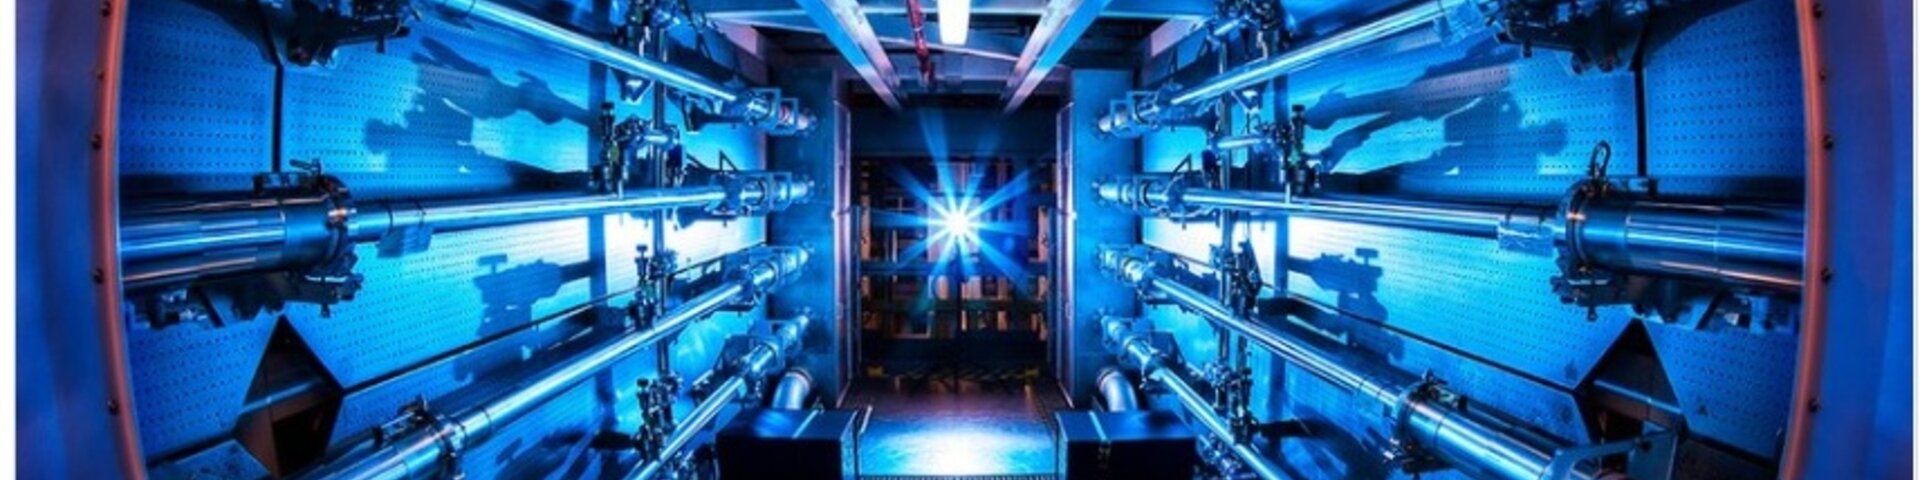 lasersulustamine kontrollitava tuumasünteesi energiaallika jaoks